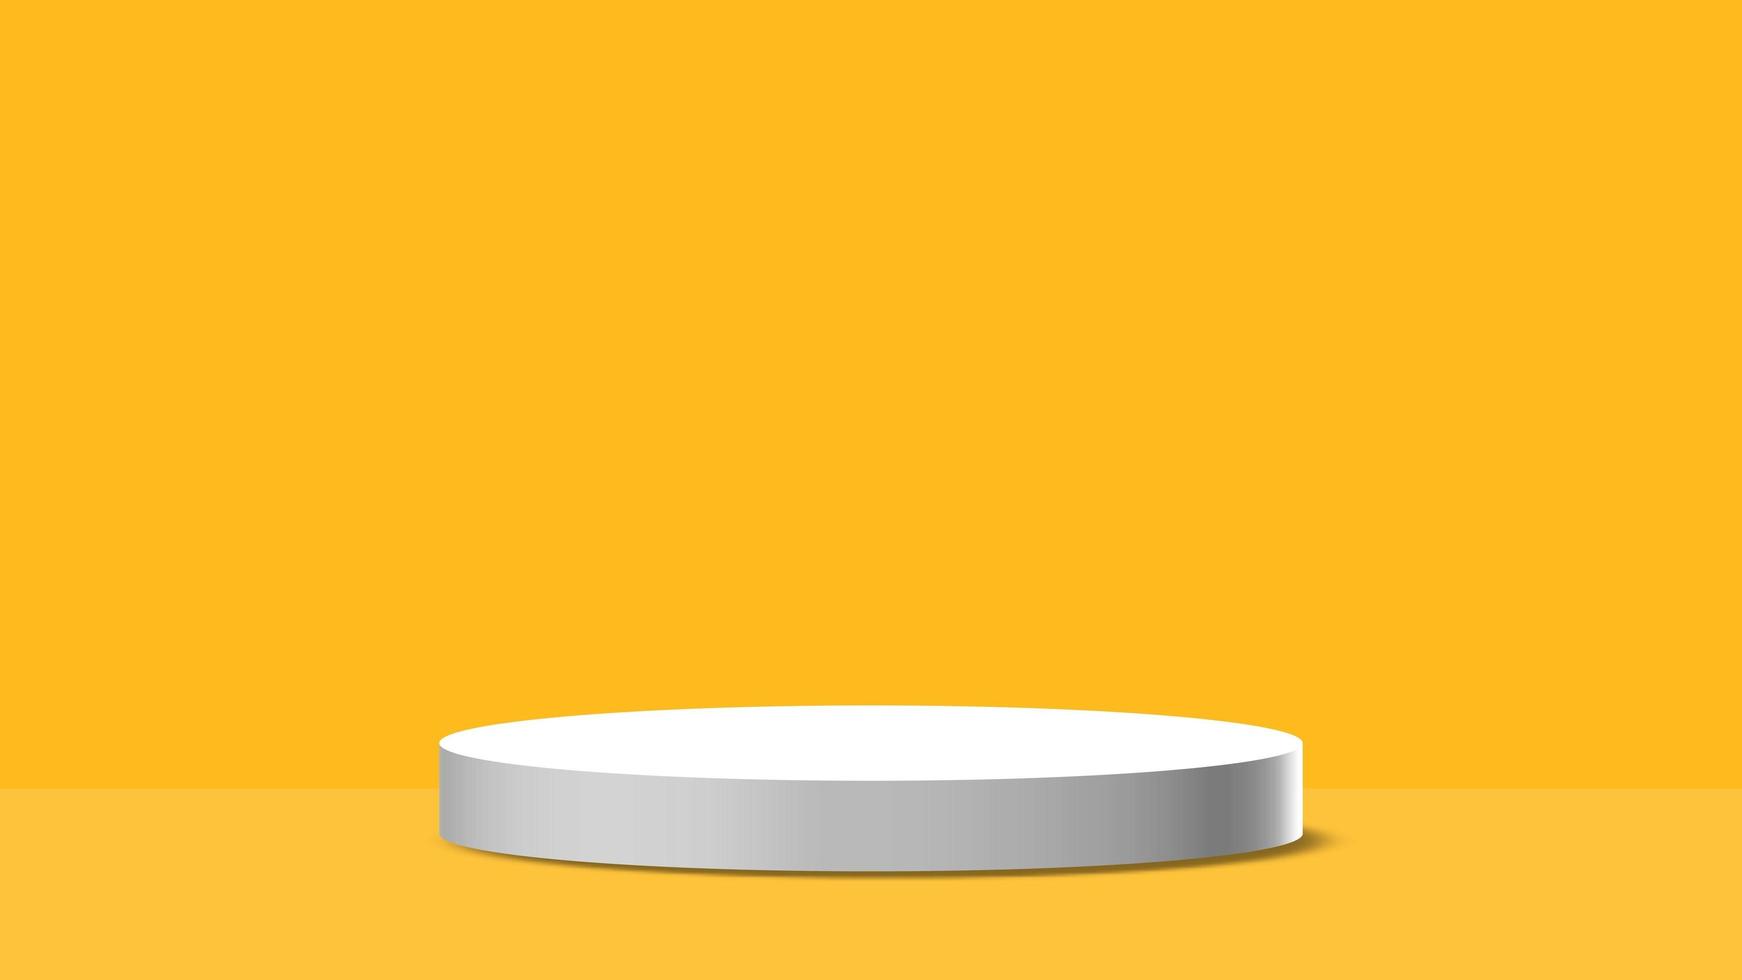 suporte de fundo de produto branco ou pedestal de pódio em exibição vazia com fundo laranja. renderização em 3D foto